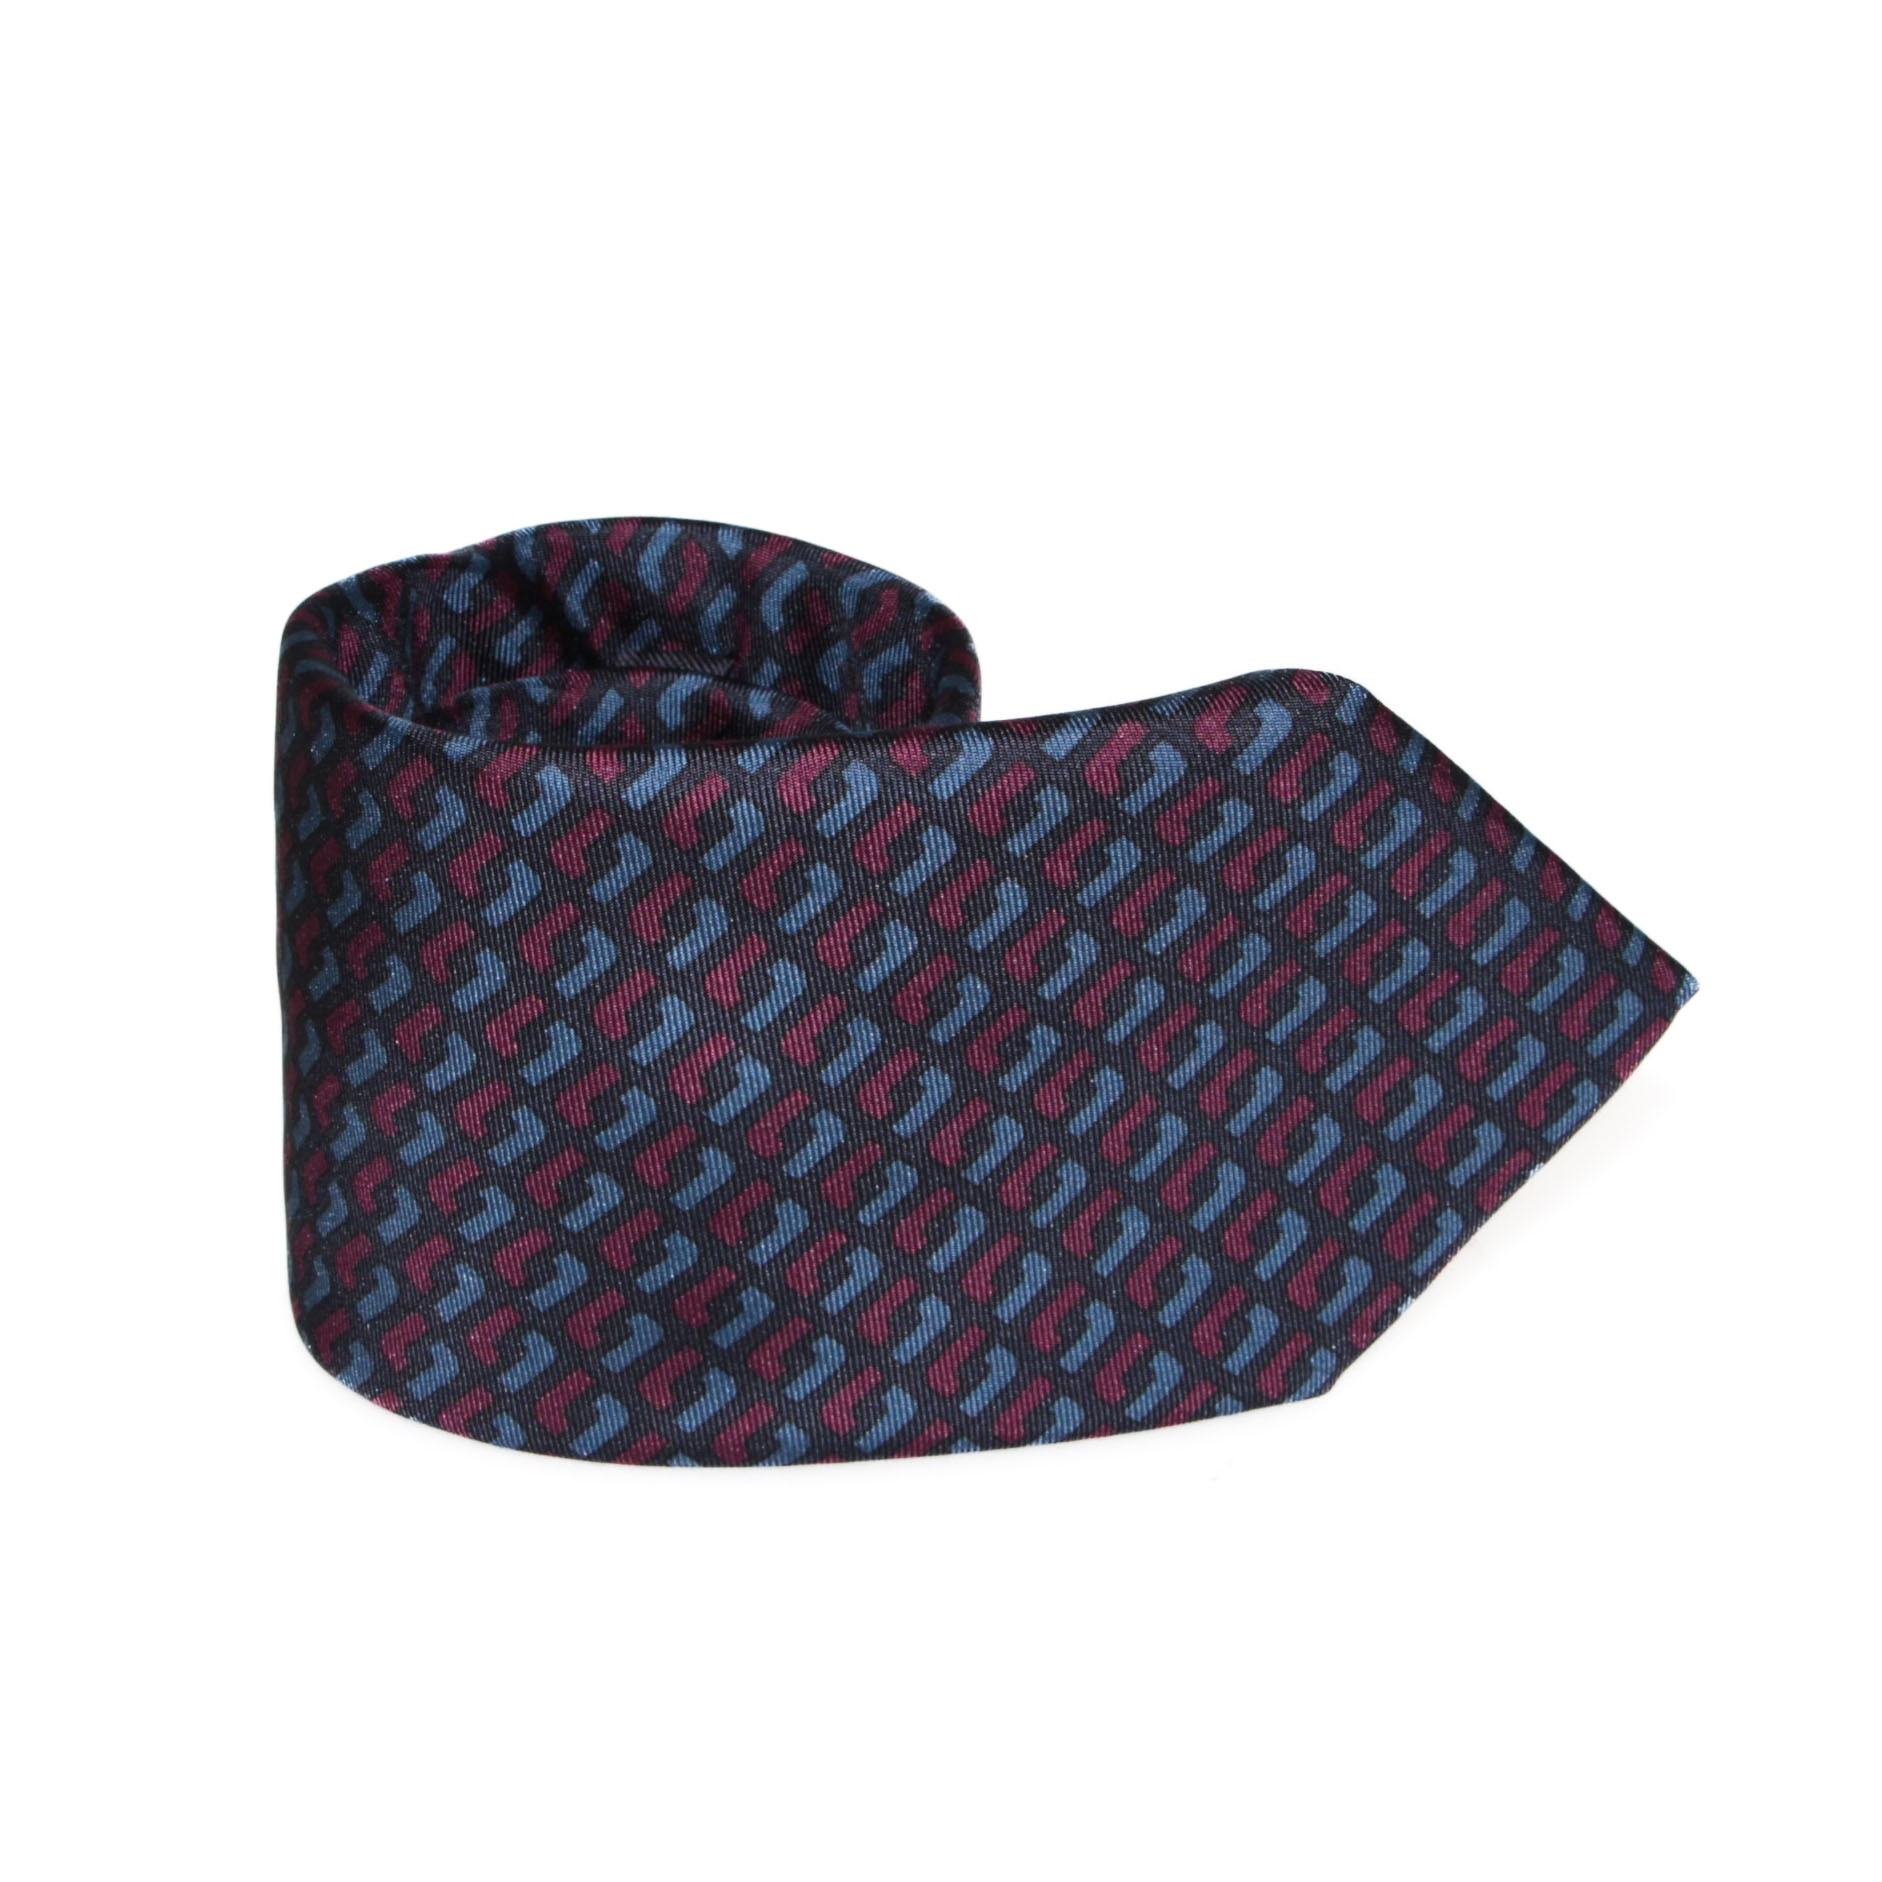 Cravate 100% Soie marine à motifs bordeaux et bleus